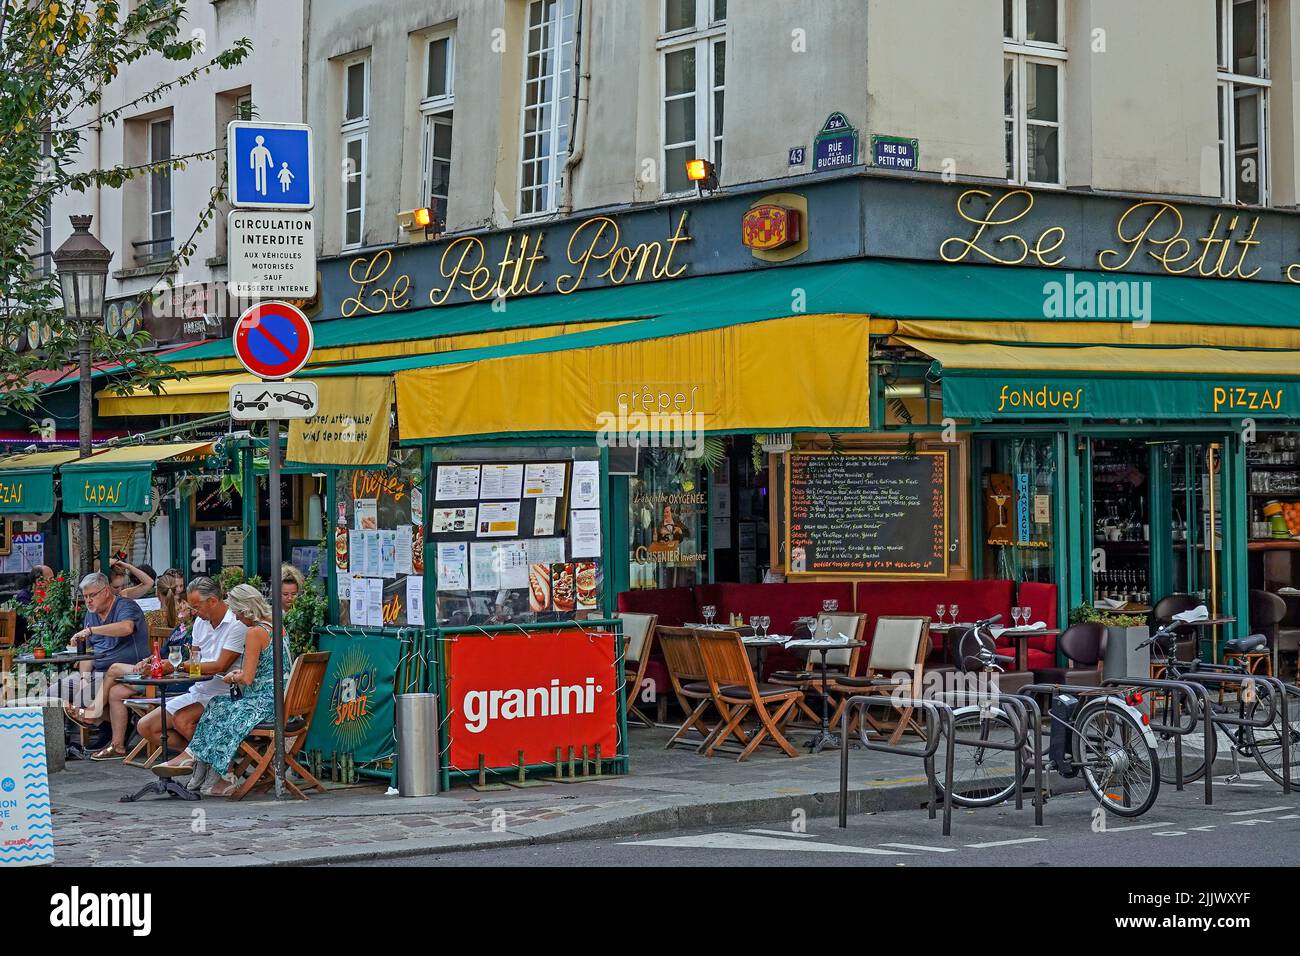 Francia París, restaurantes y restaurantes en la animada Rue de la Huchette, una de las calles más antiguas que corren a lo largo de la Rive Gauche en París. Ejecución de eas Foto de stock